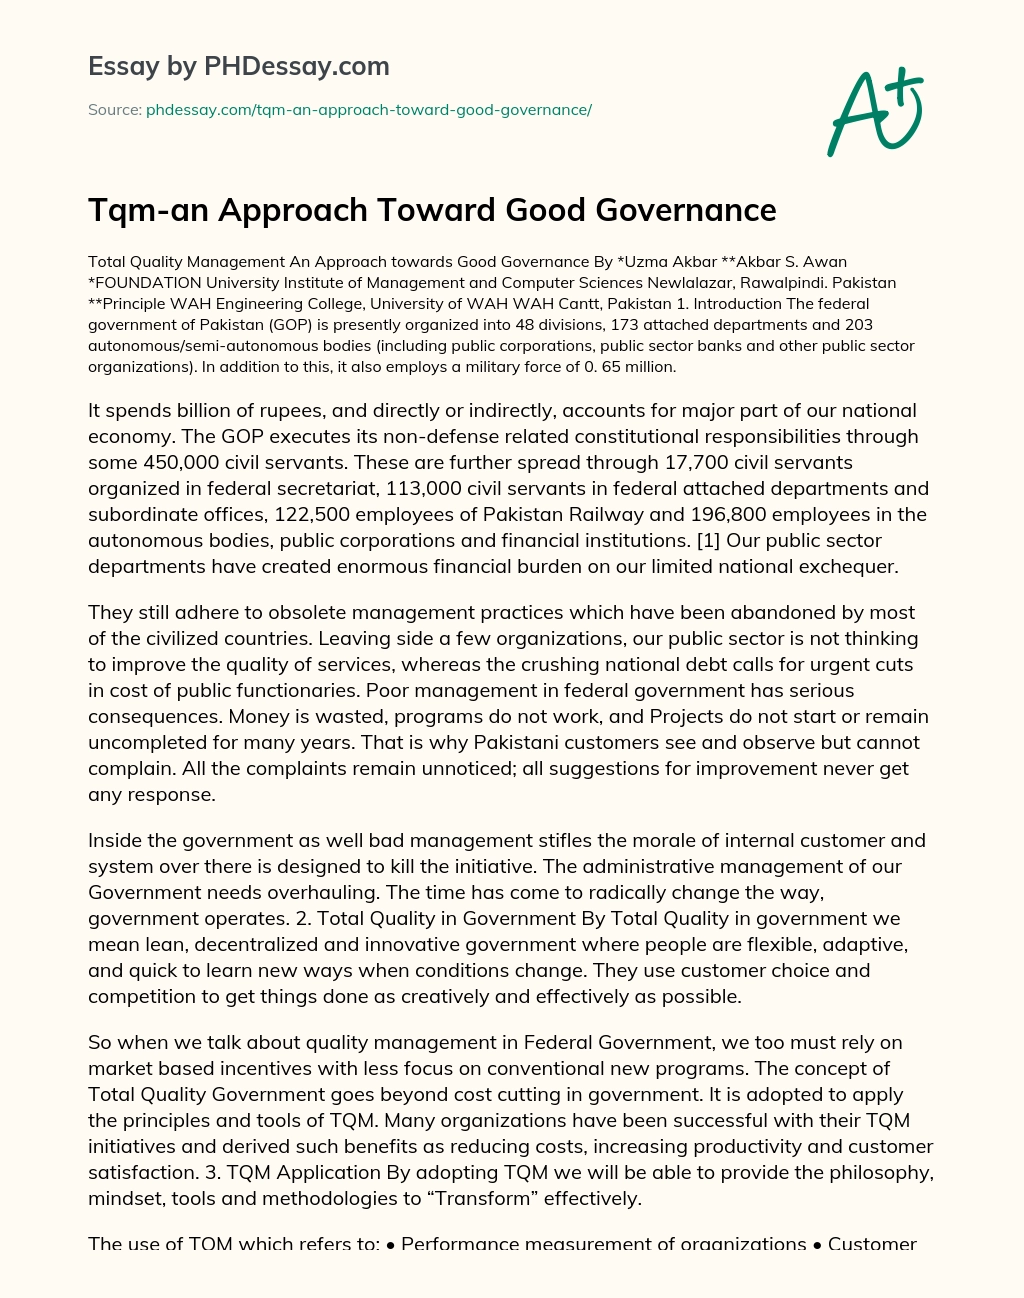 Tqm-an Approach Toward Good Governance essay